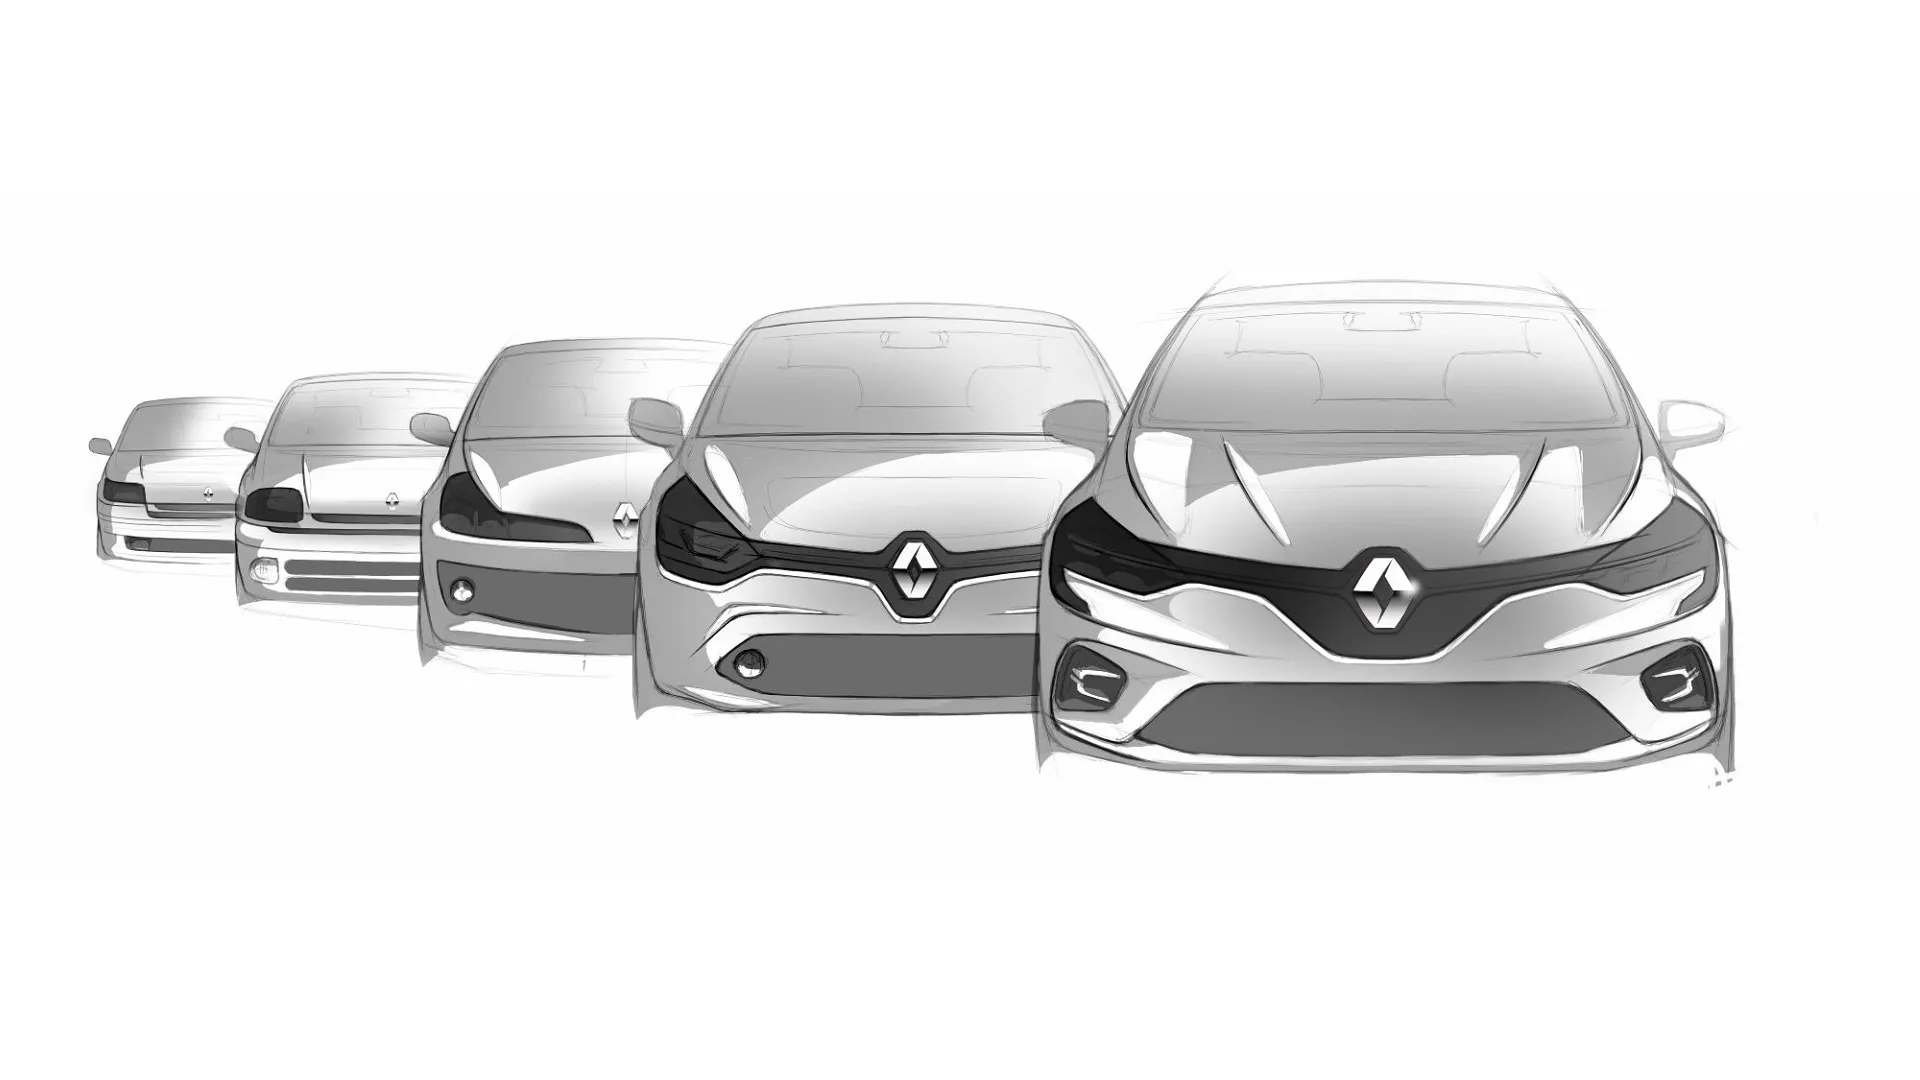 Habrá una sexta generación del Renault Clio, pero no llegará hasta 2026